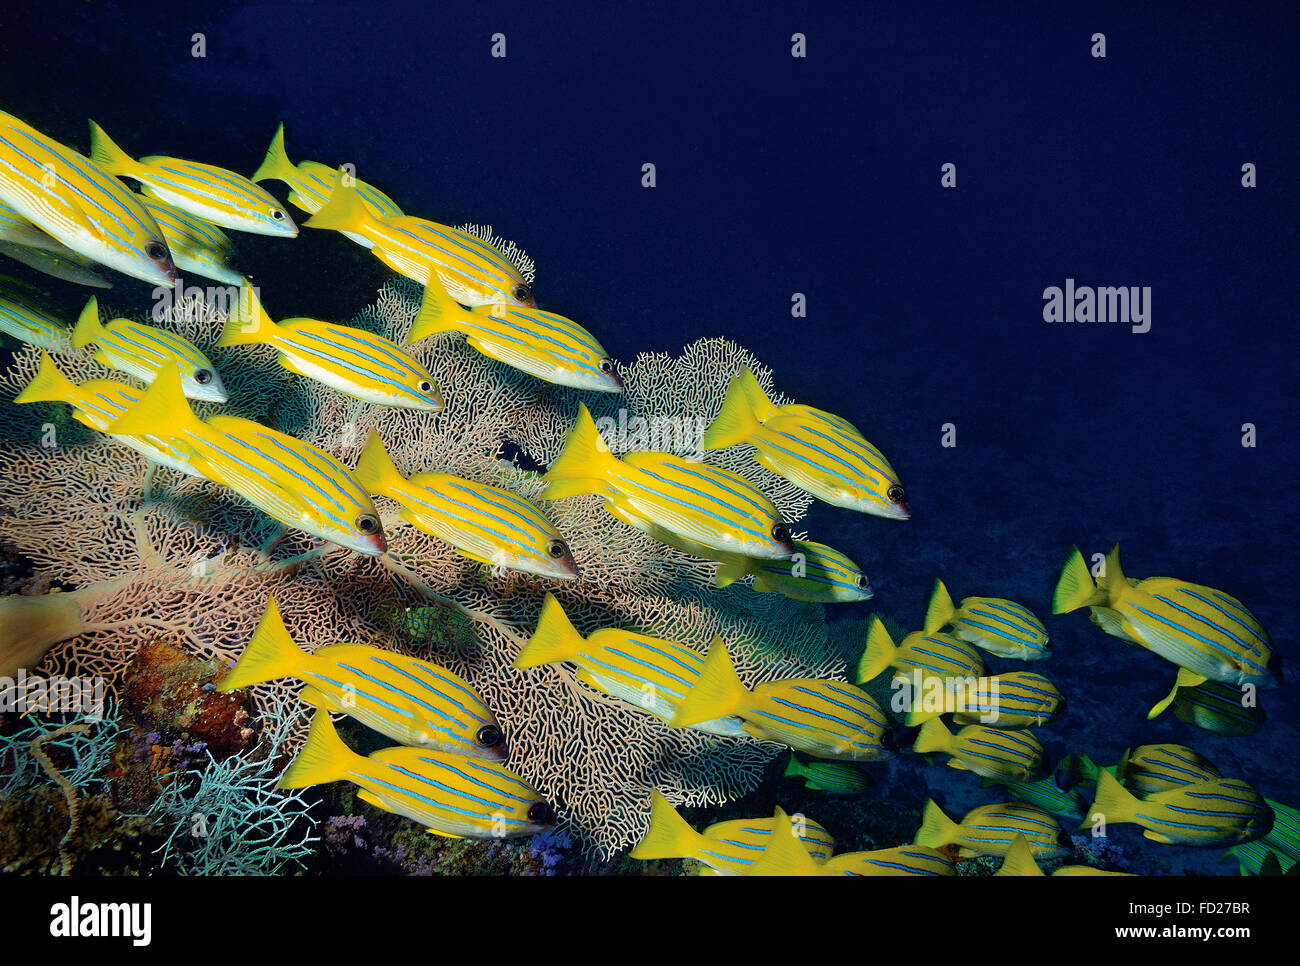 Shoal of bluestripe snapper, Lutjanus kasmira, swimming in front of Sea fan coral, Gorgonacea, Maldives, Indian Ocean Stock Photo